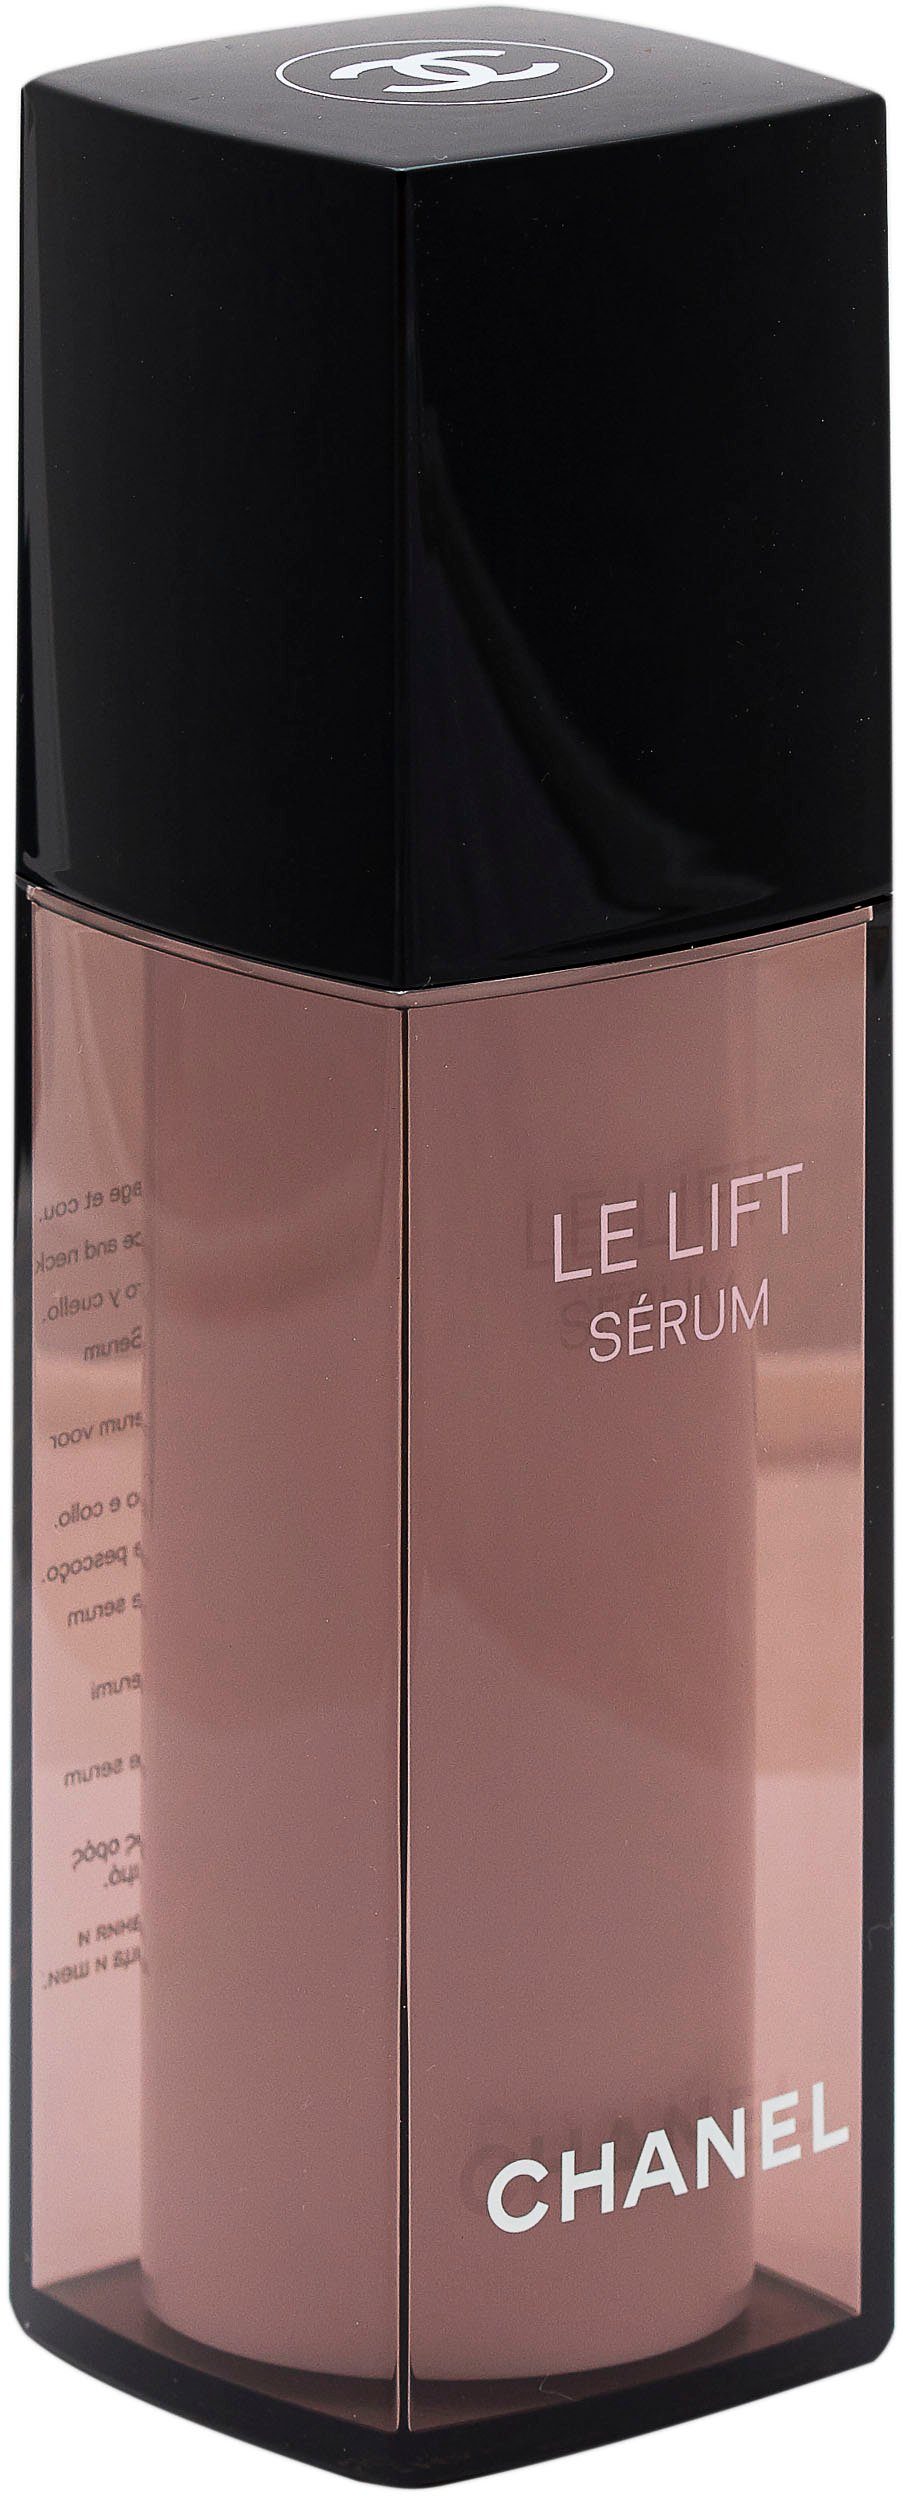 Lift Chanel CHANEL Lisse-Raffermint Le Gesichtsserum Serum